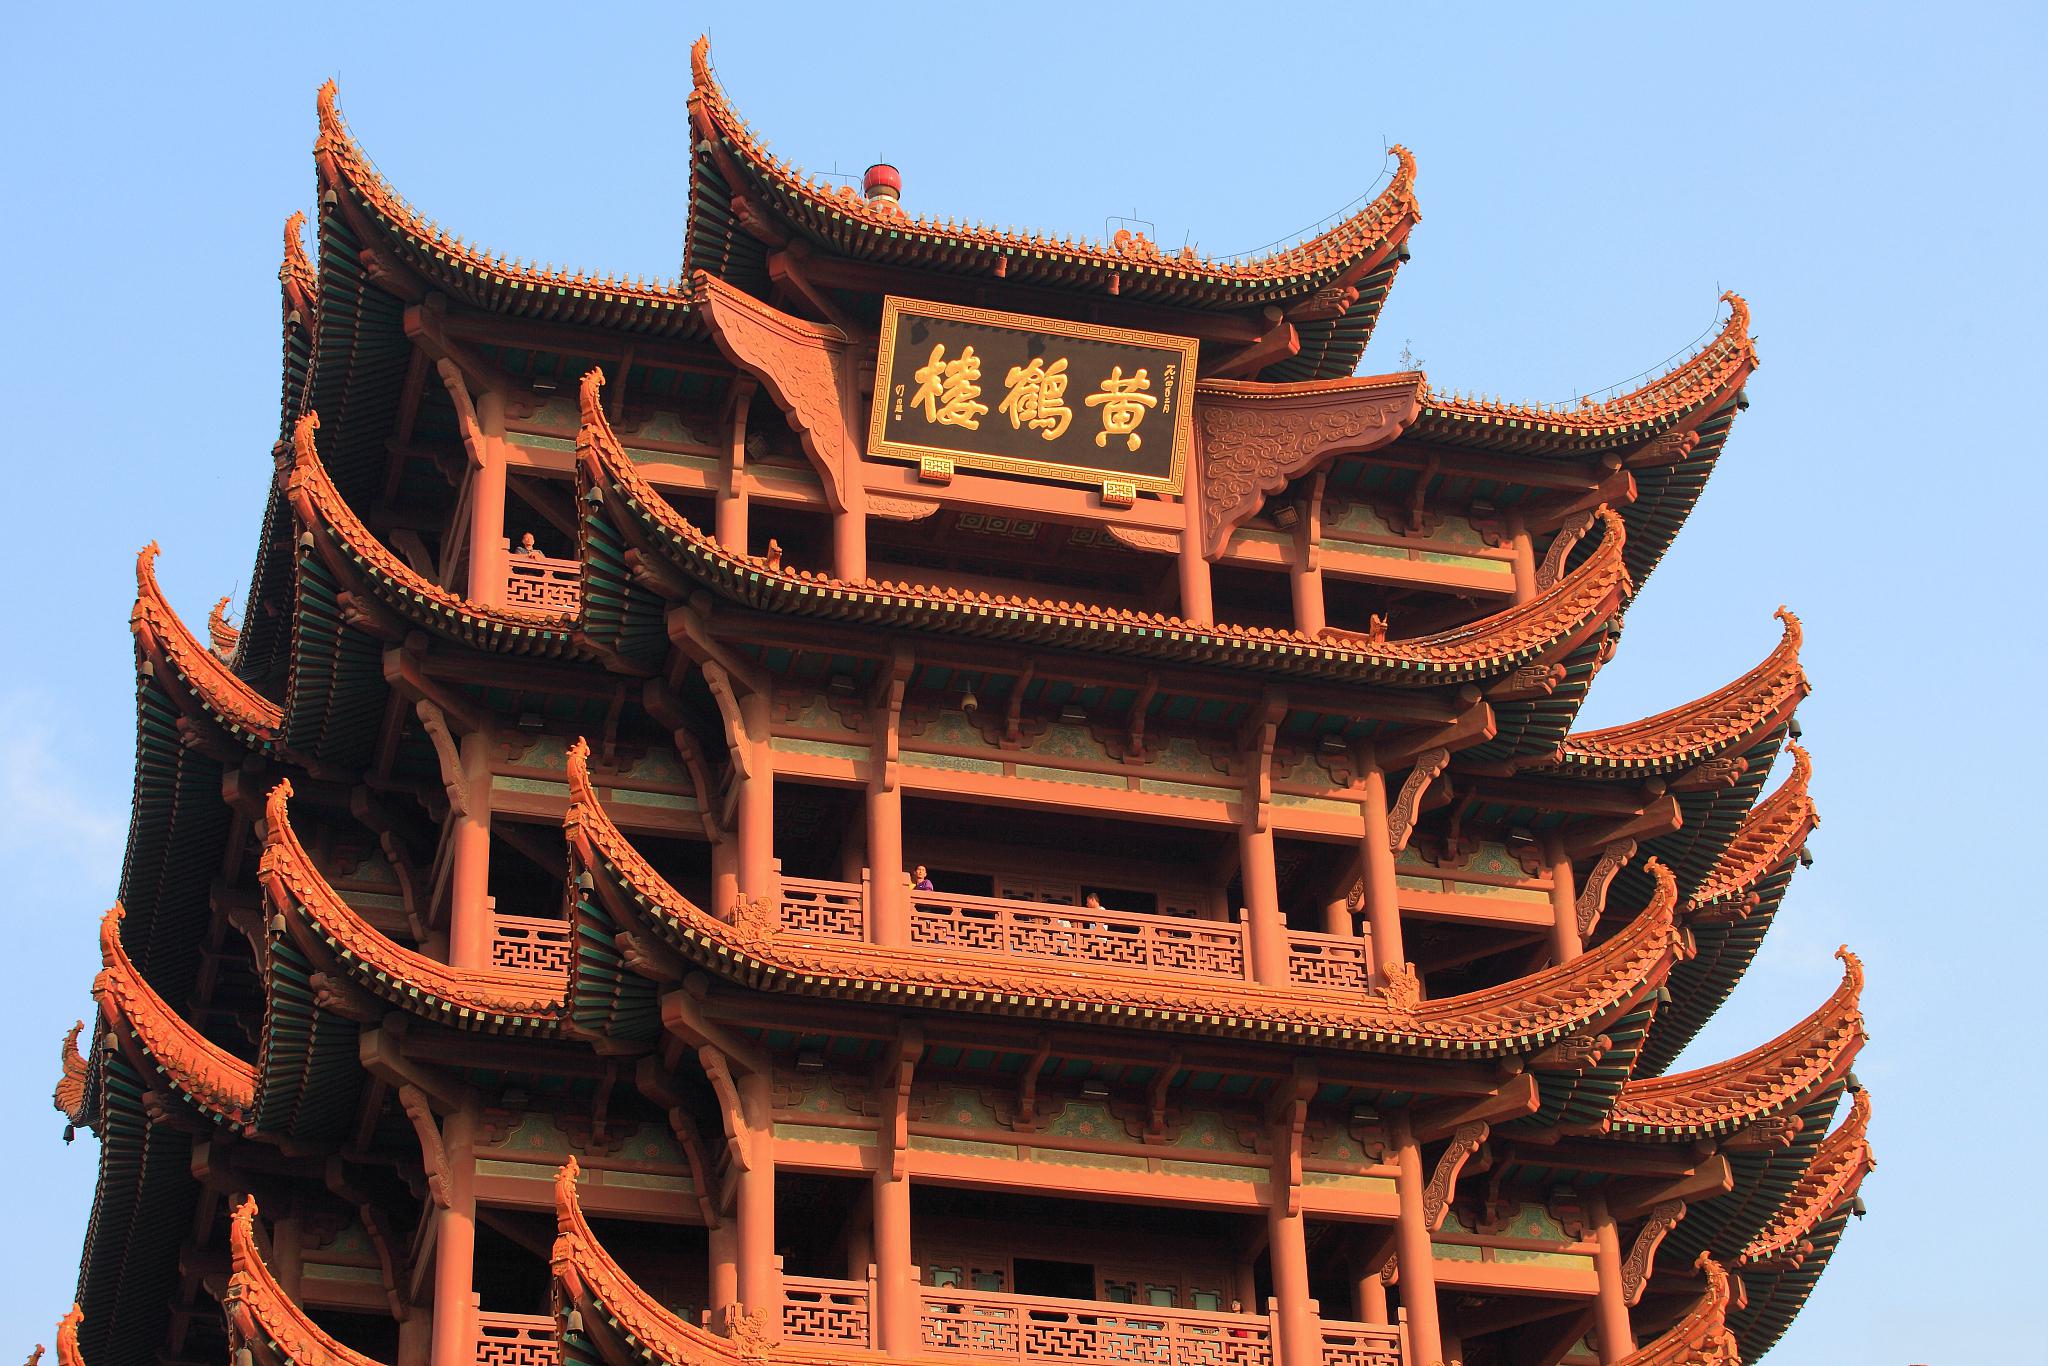 黄鹤楼,江南三大名楼之一 黄鹤楼,位于中国湖北省武汉市武昌区的长江